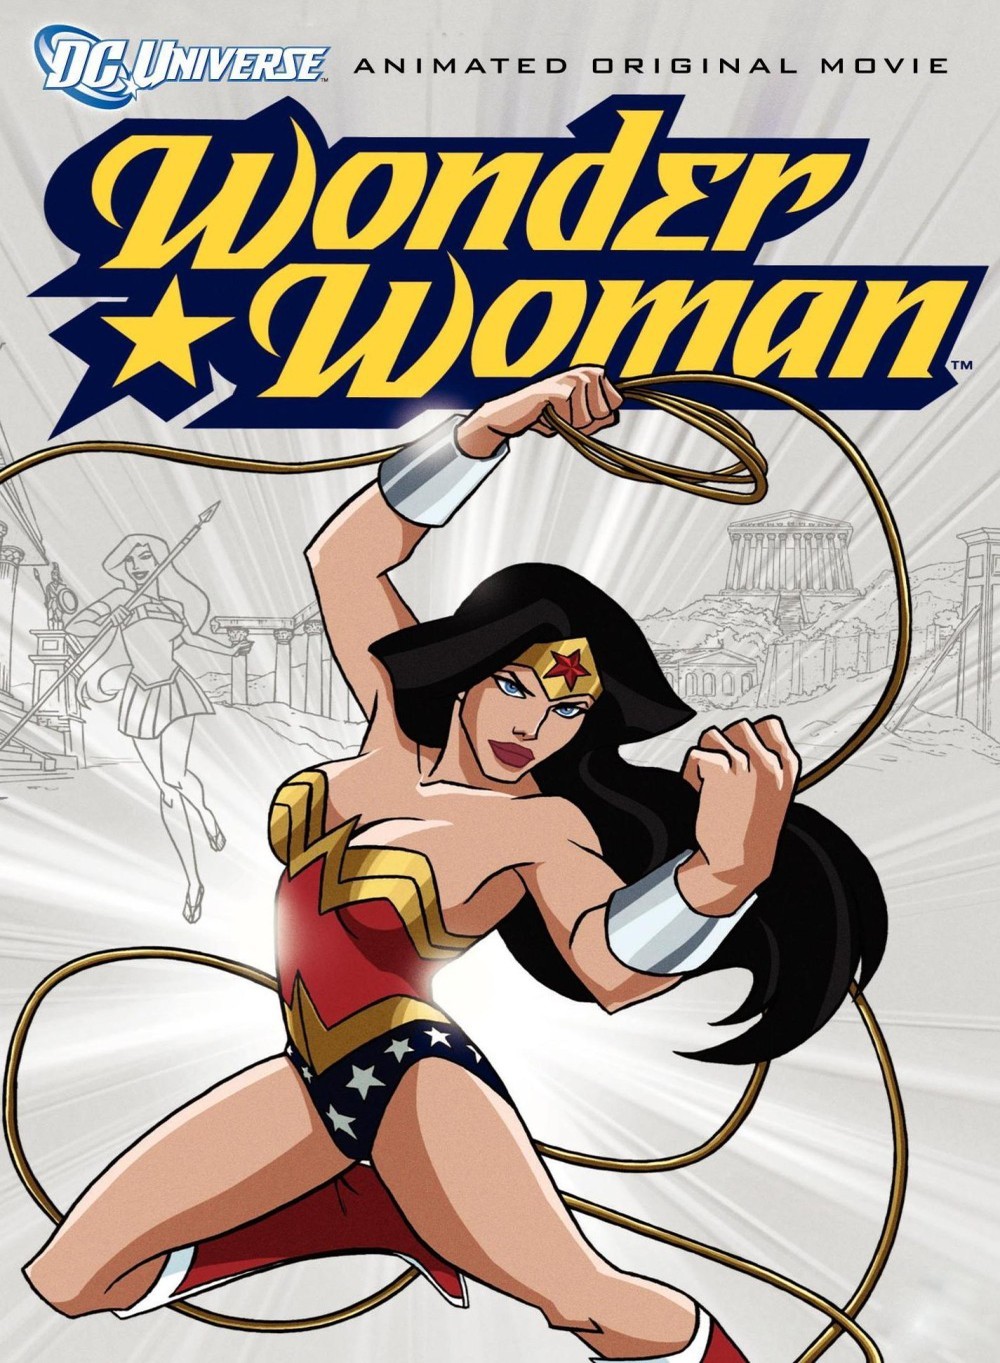 affiche du film Wonder Woman